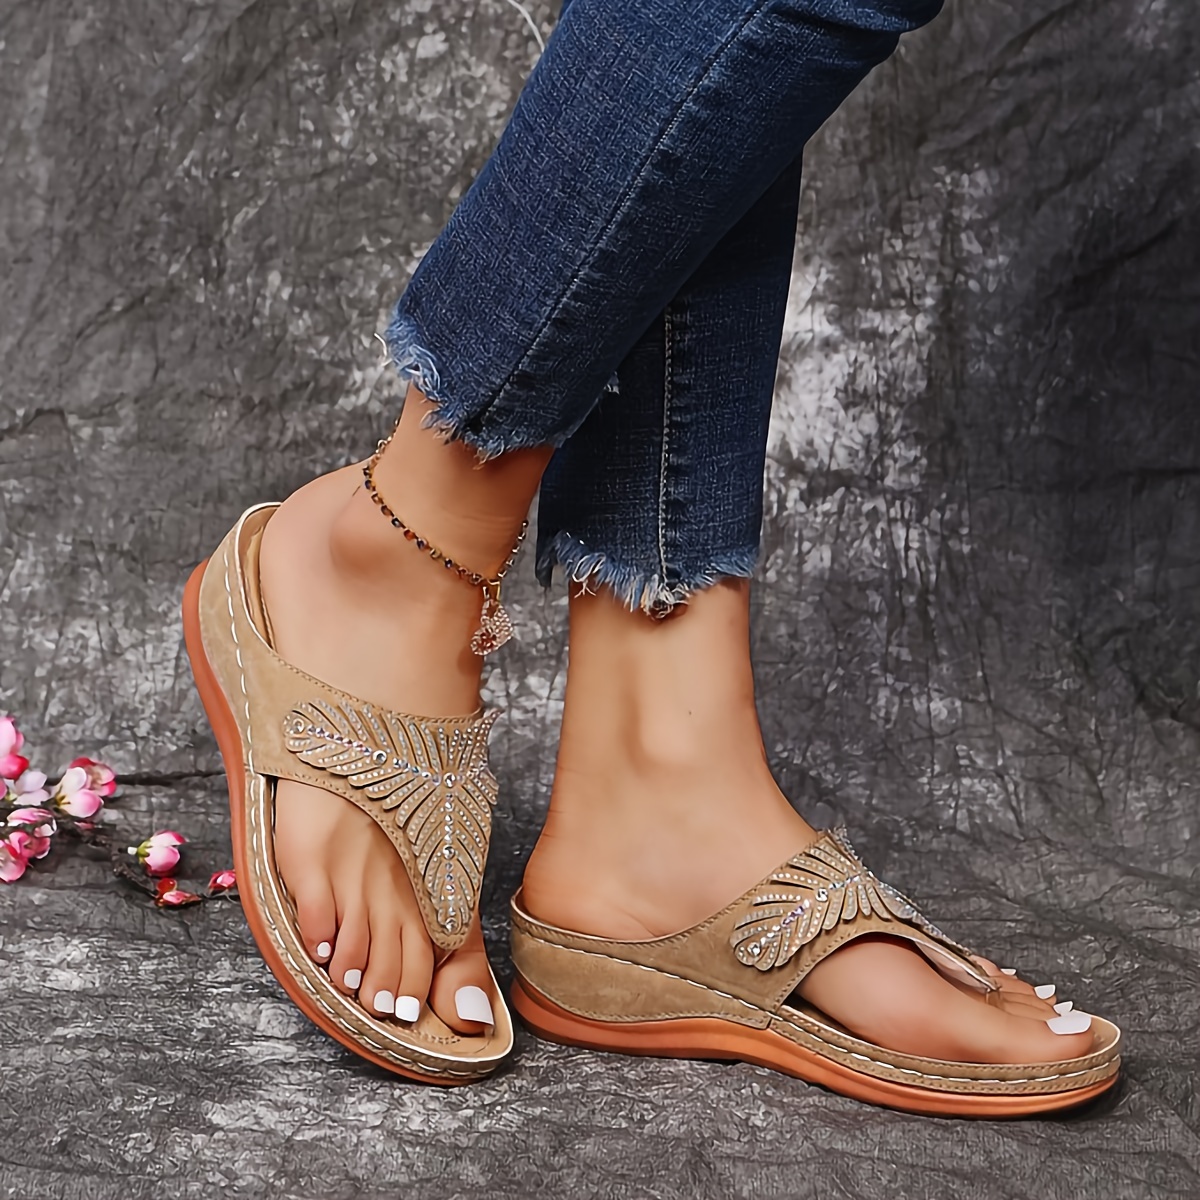  Flip Flops Sandals for Women Bling Rihinestones Wedge